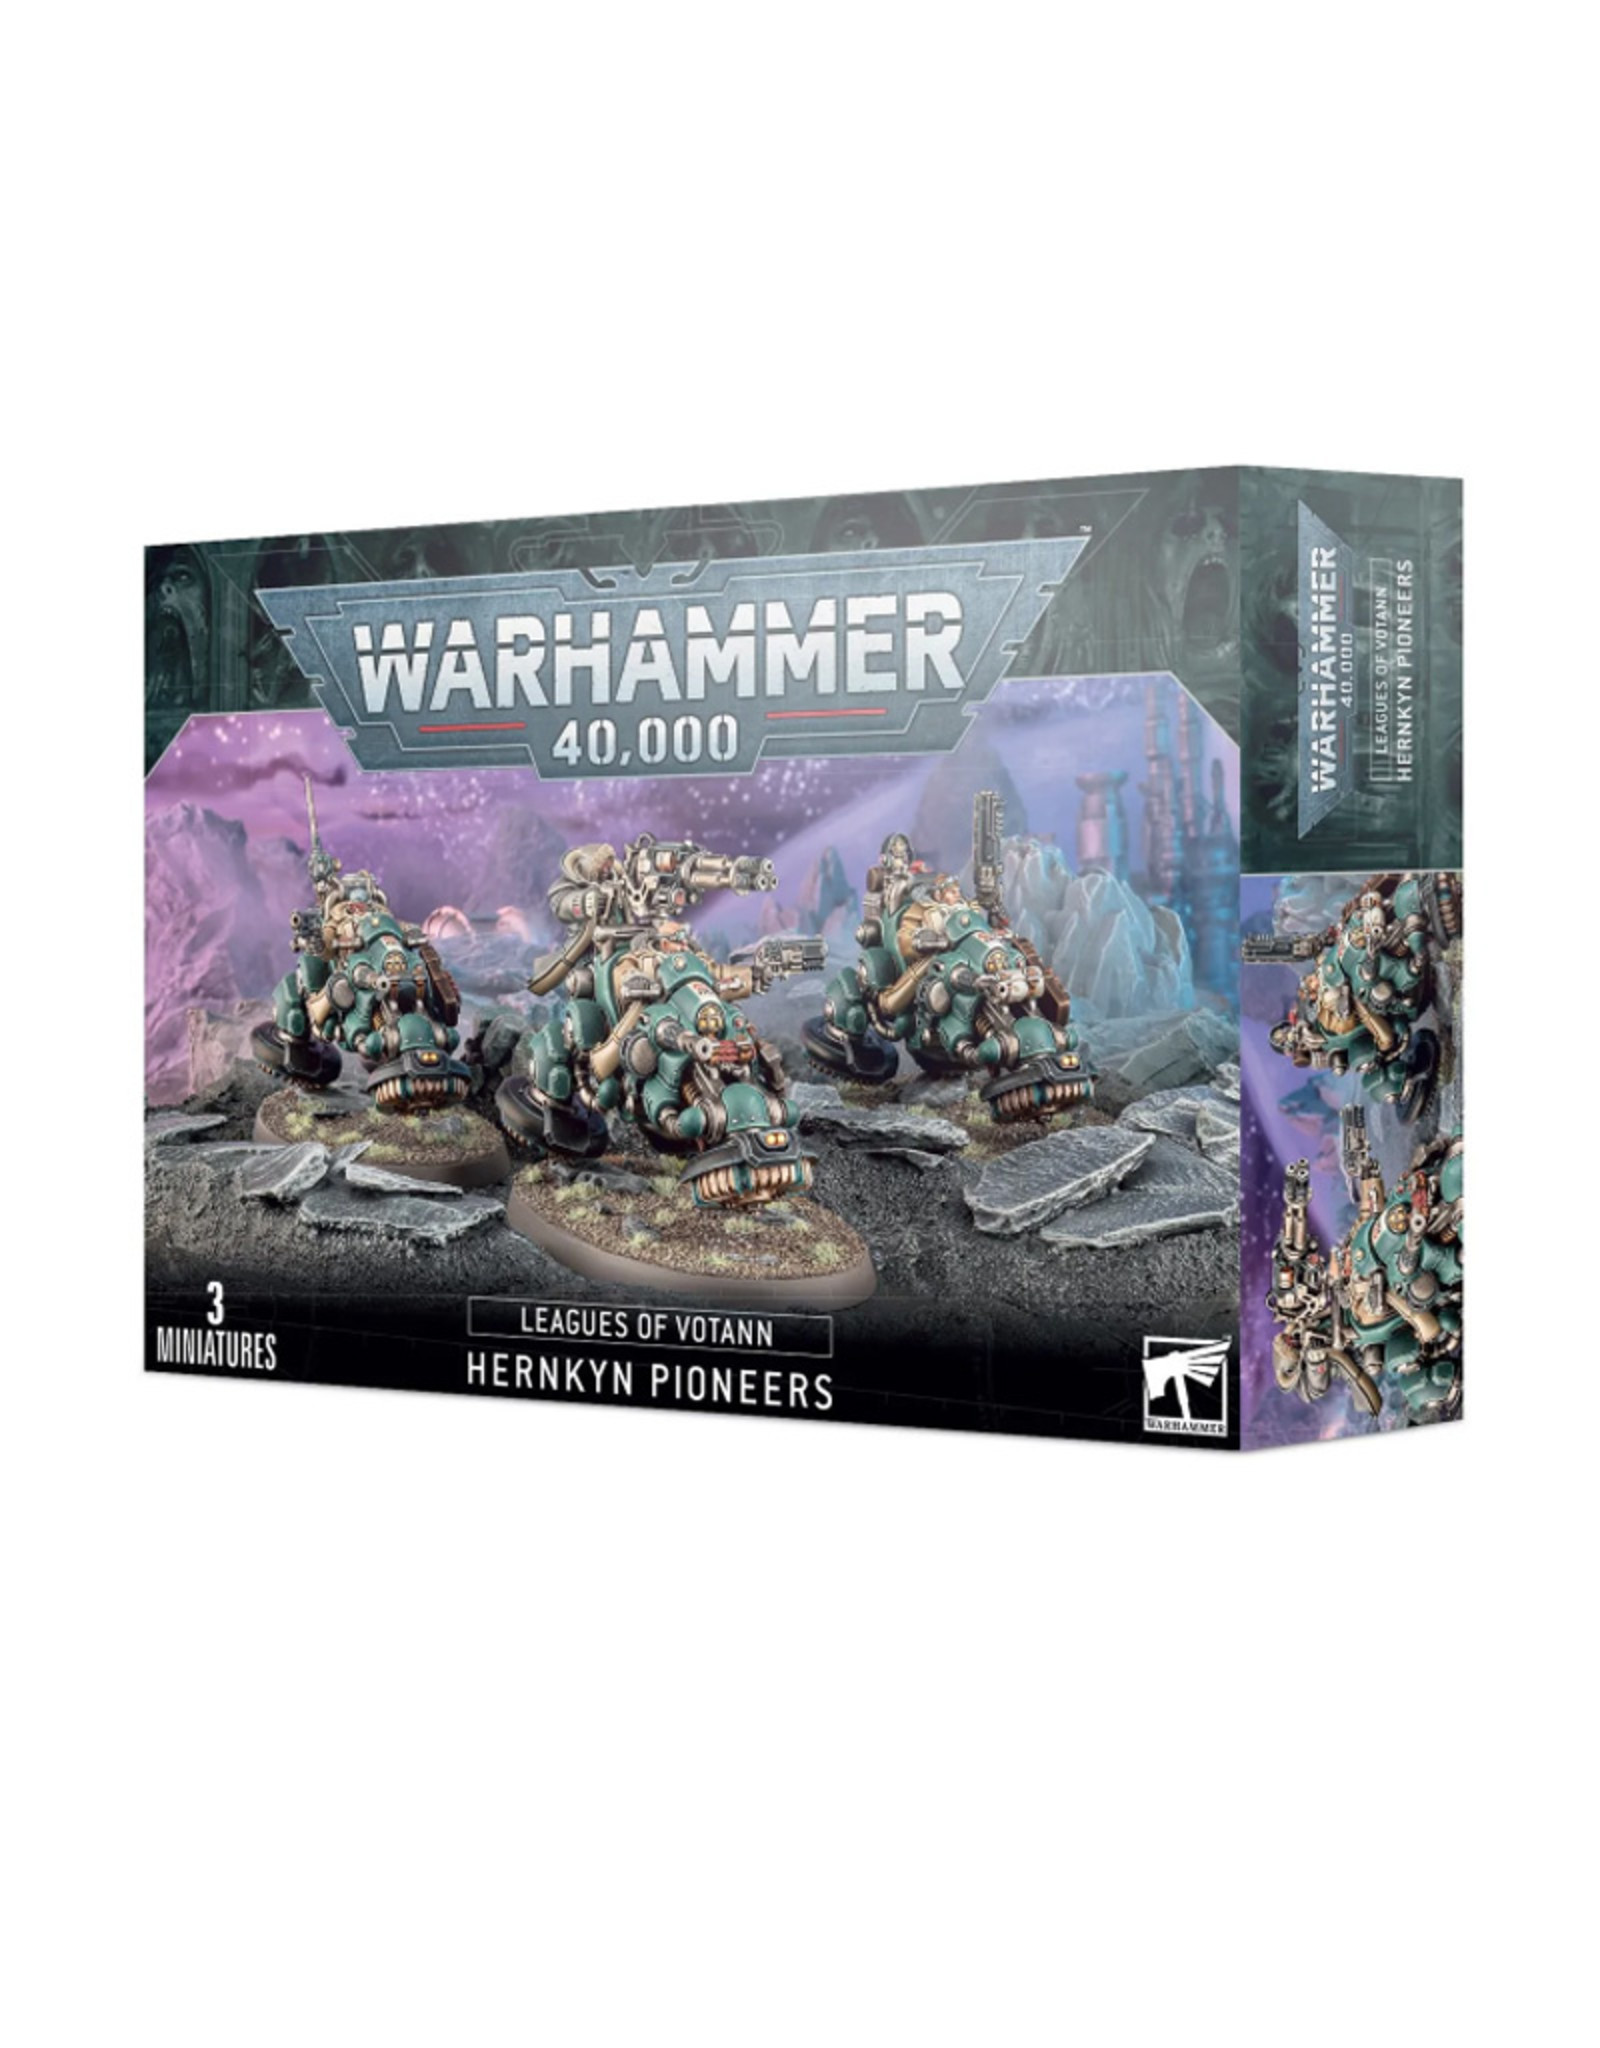 Games Workshop Warhammer 40,000 Leagues of Votann Hernkyn Pioneers